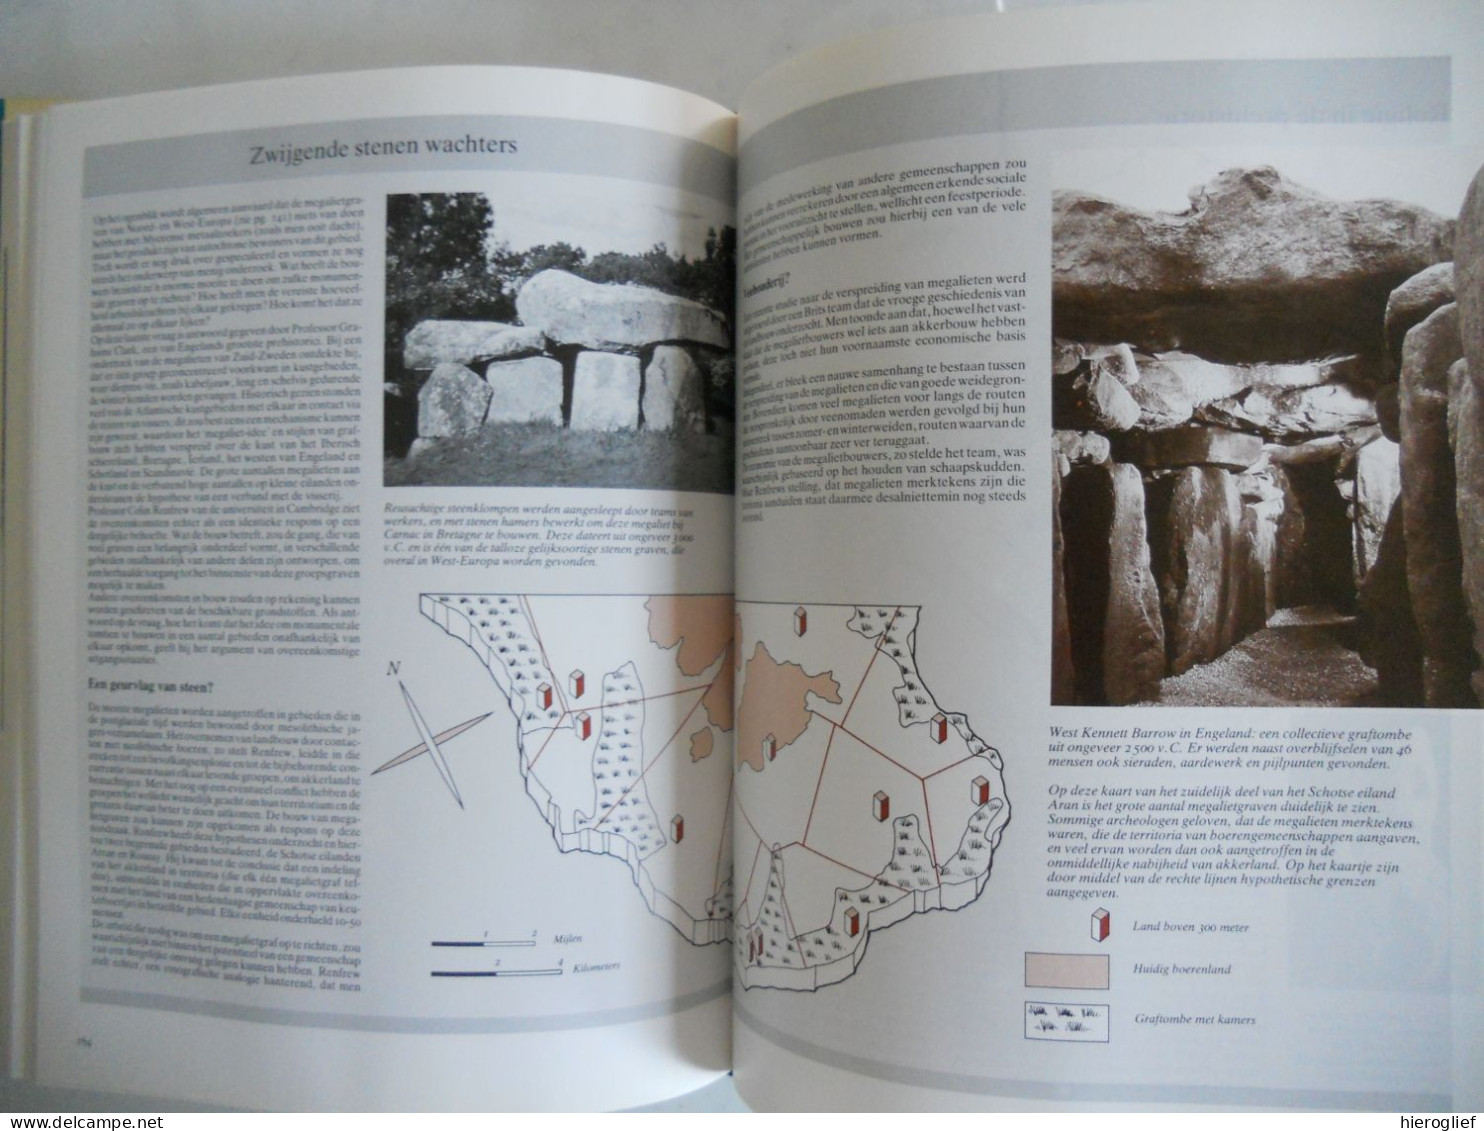 ARCHEOLOGISCH HANDBOEK door JANE McINTOSH 1986 archeologie wat? terrein opgraven bodemonderzoek interpretatie analyse